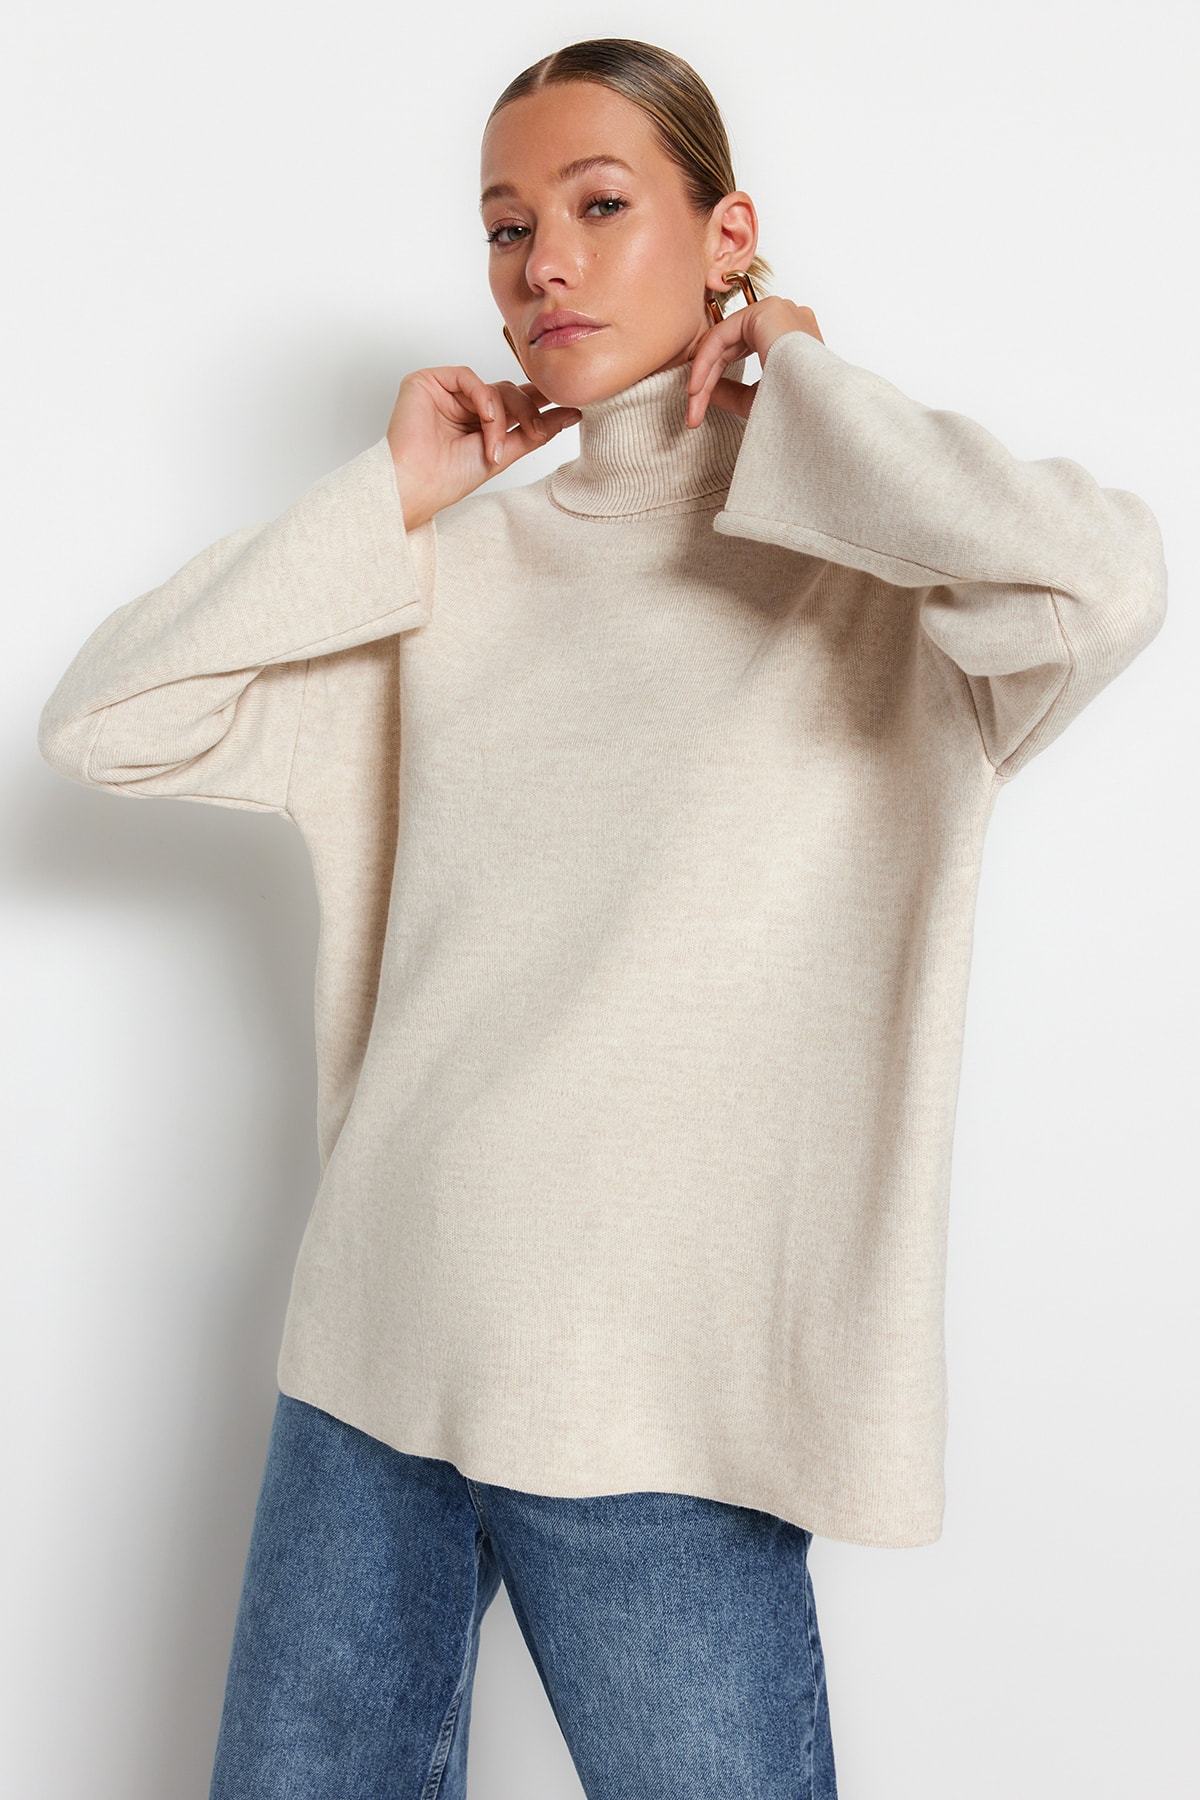 Trendyol Stone Wide Fit Basic Oversize Knitwear Sweater